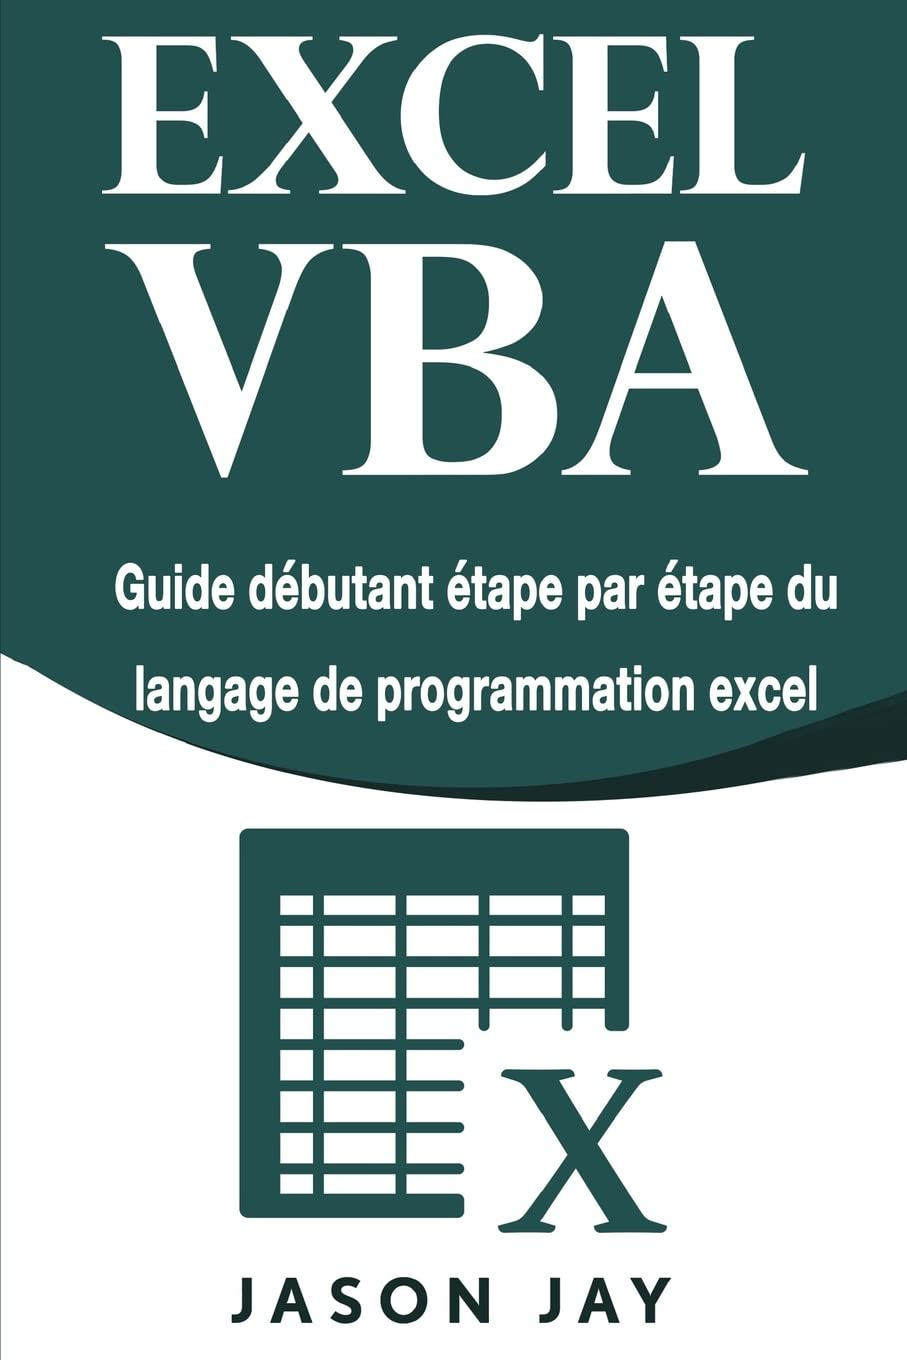 EXCEL VBA: Guide débutant étape par étape du langage de programmation excel